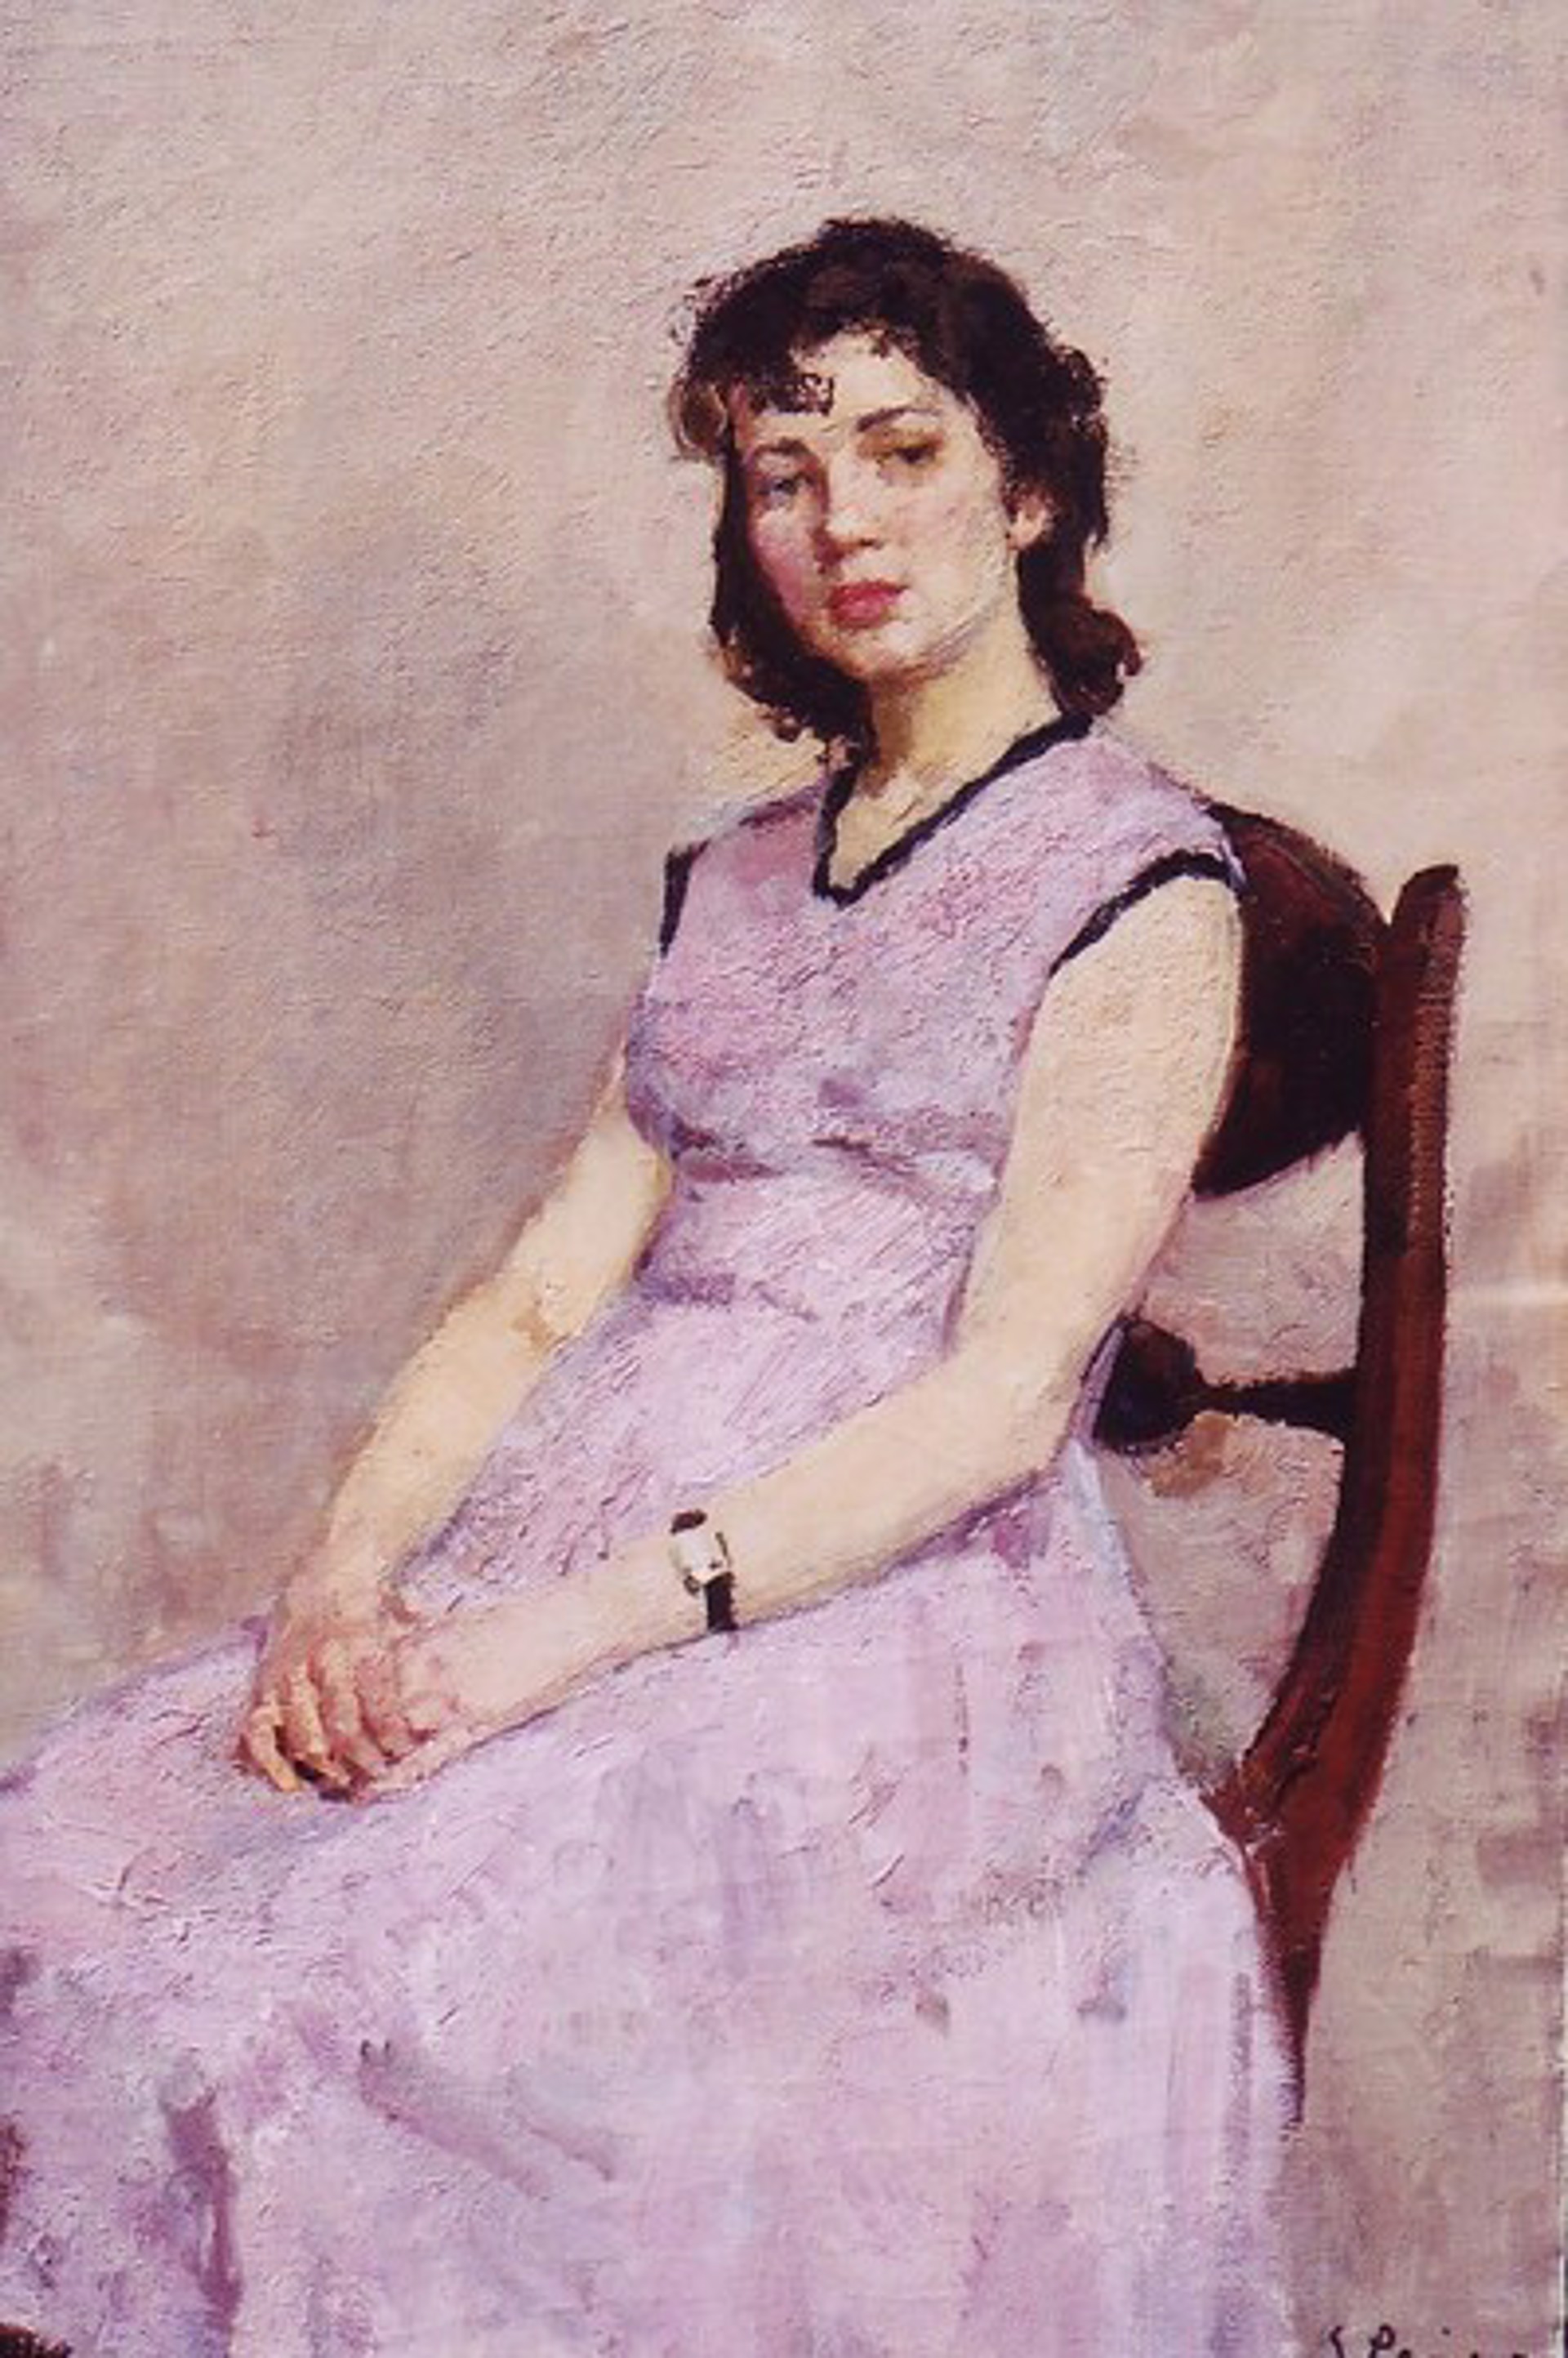 Portrait in Pink by Viktor Reikhet